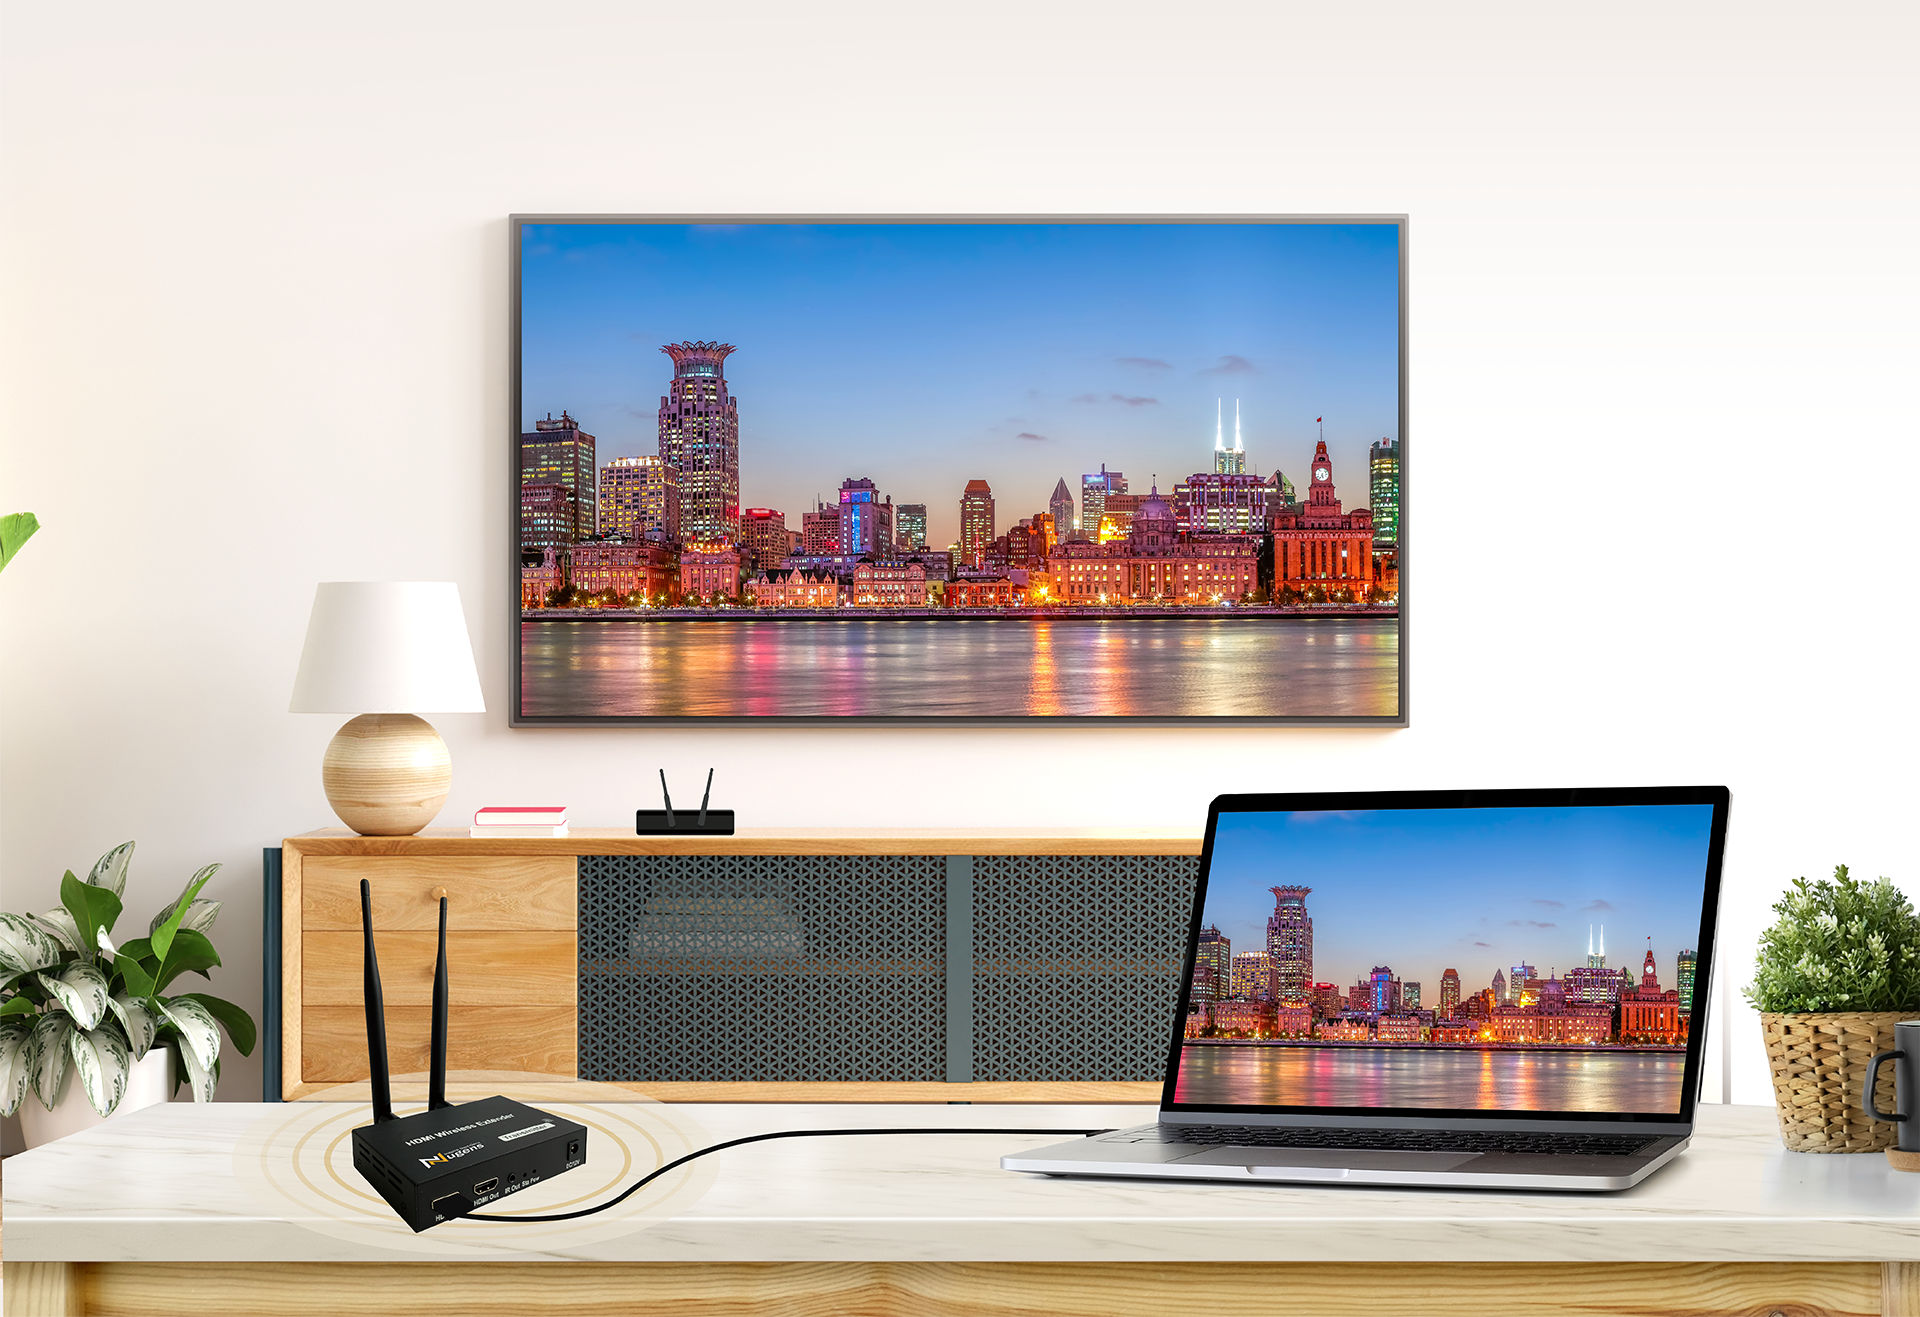 無線HDMI全自動影音傳輸器在客廳用筆電和電視同步投影的使用情境